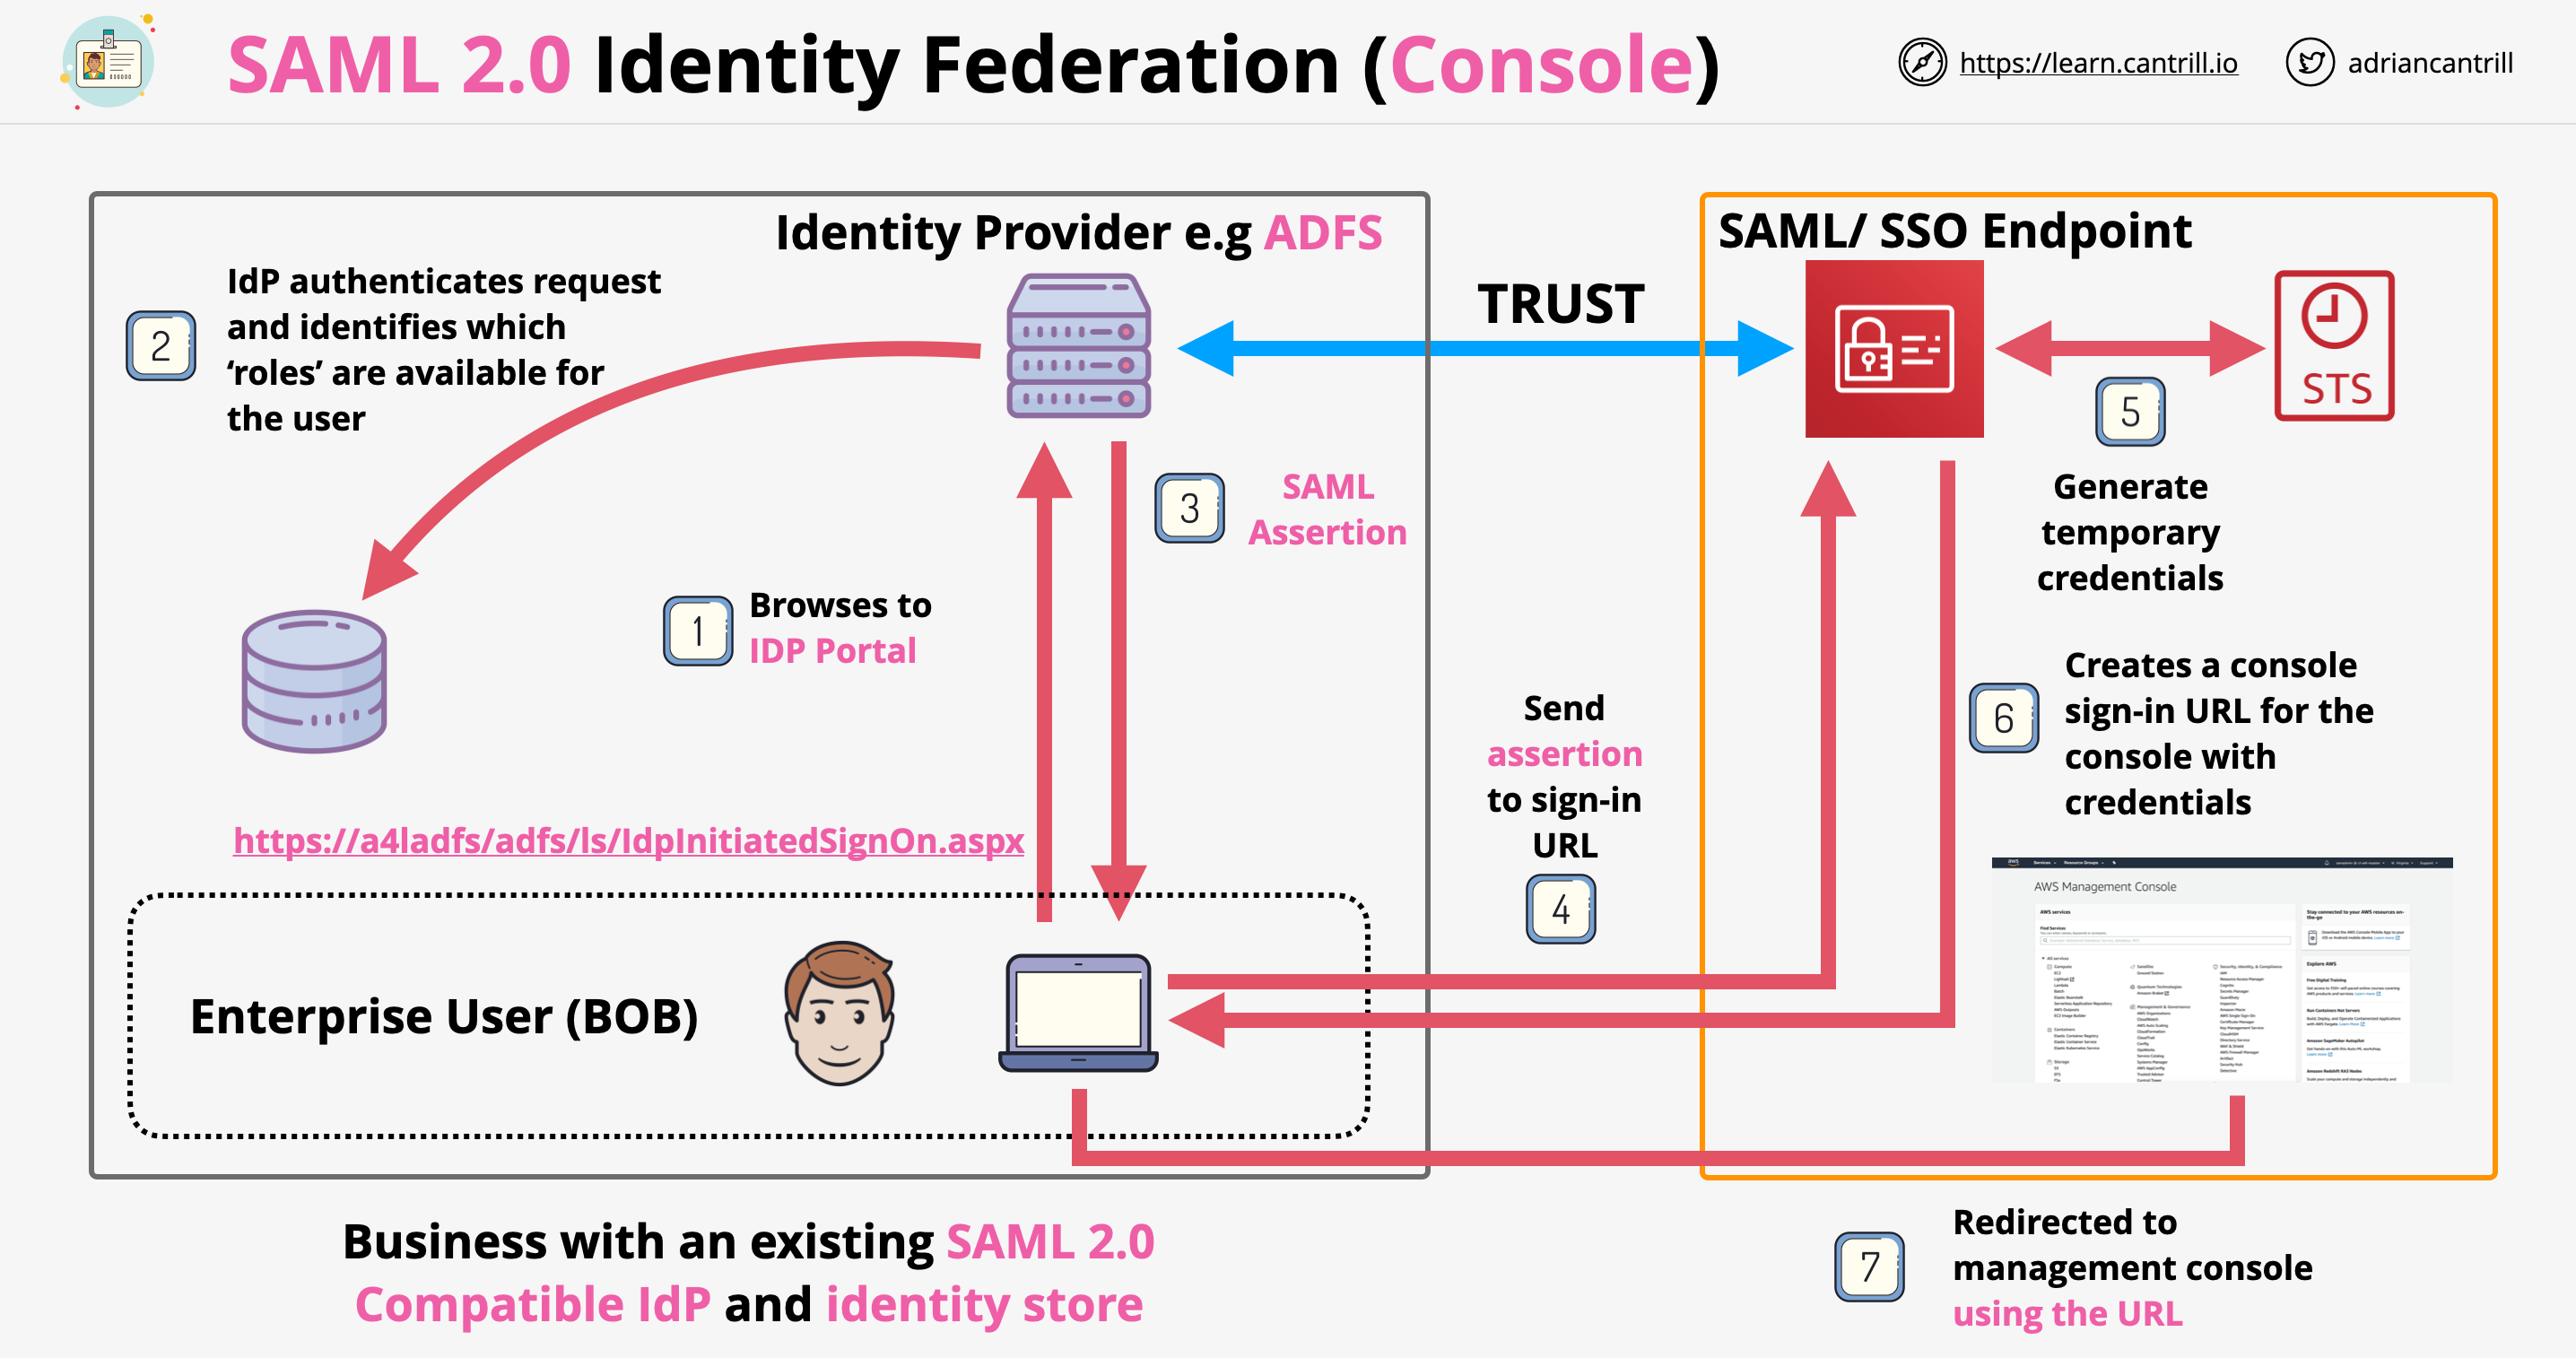 SAML 2.0 Federation Console